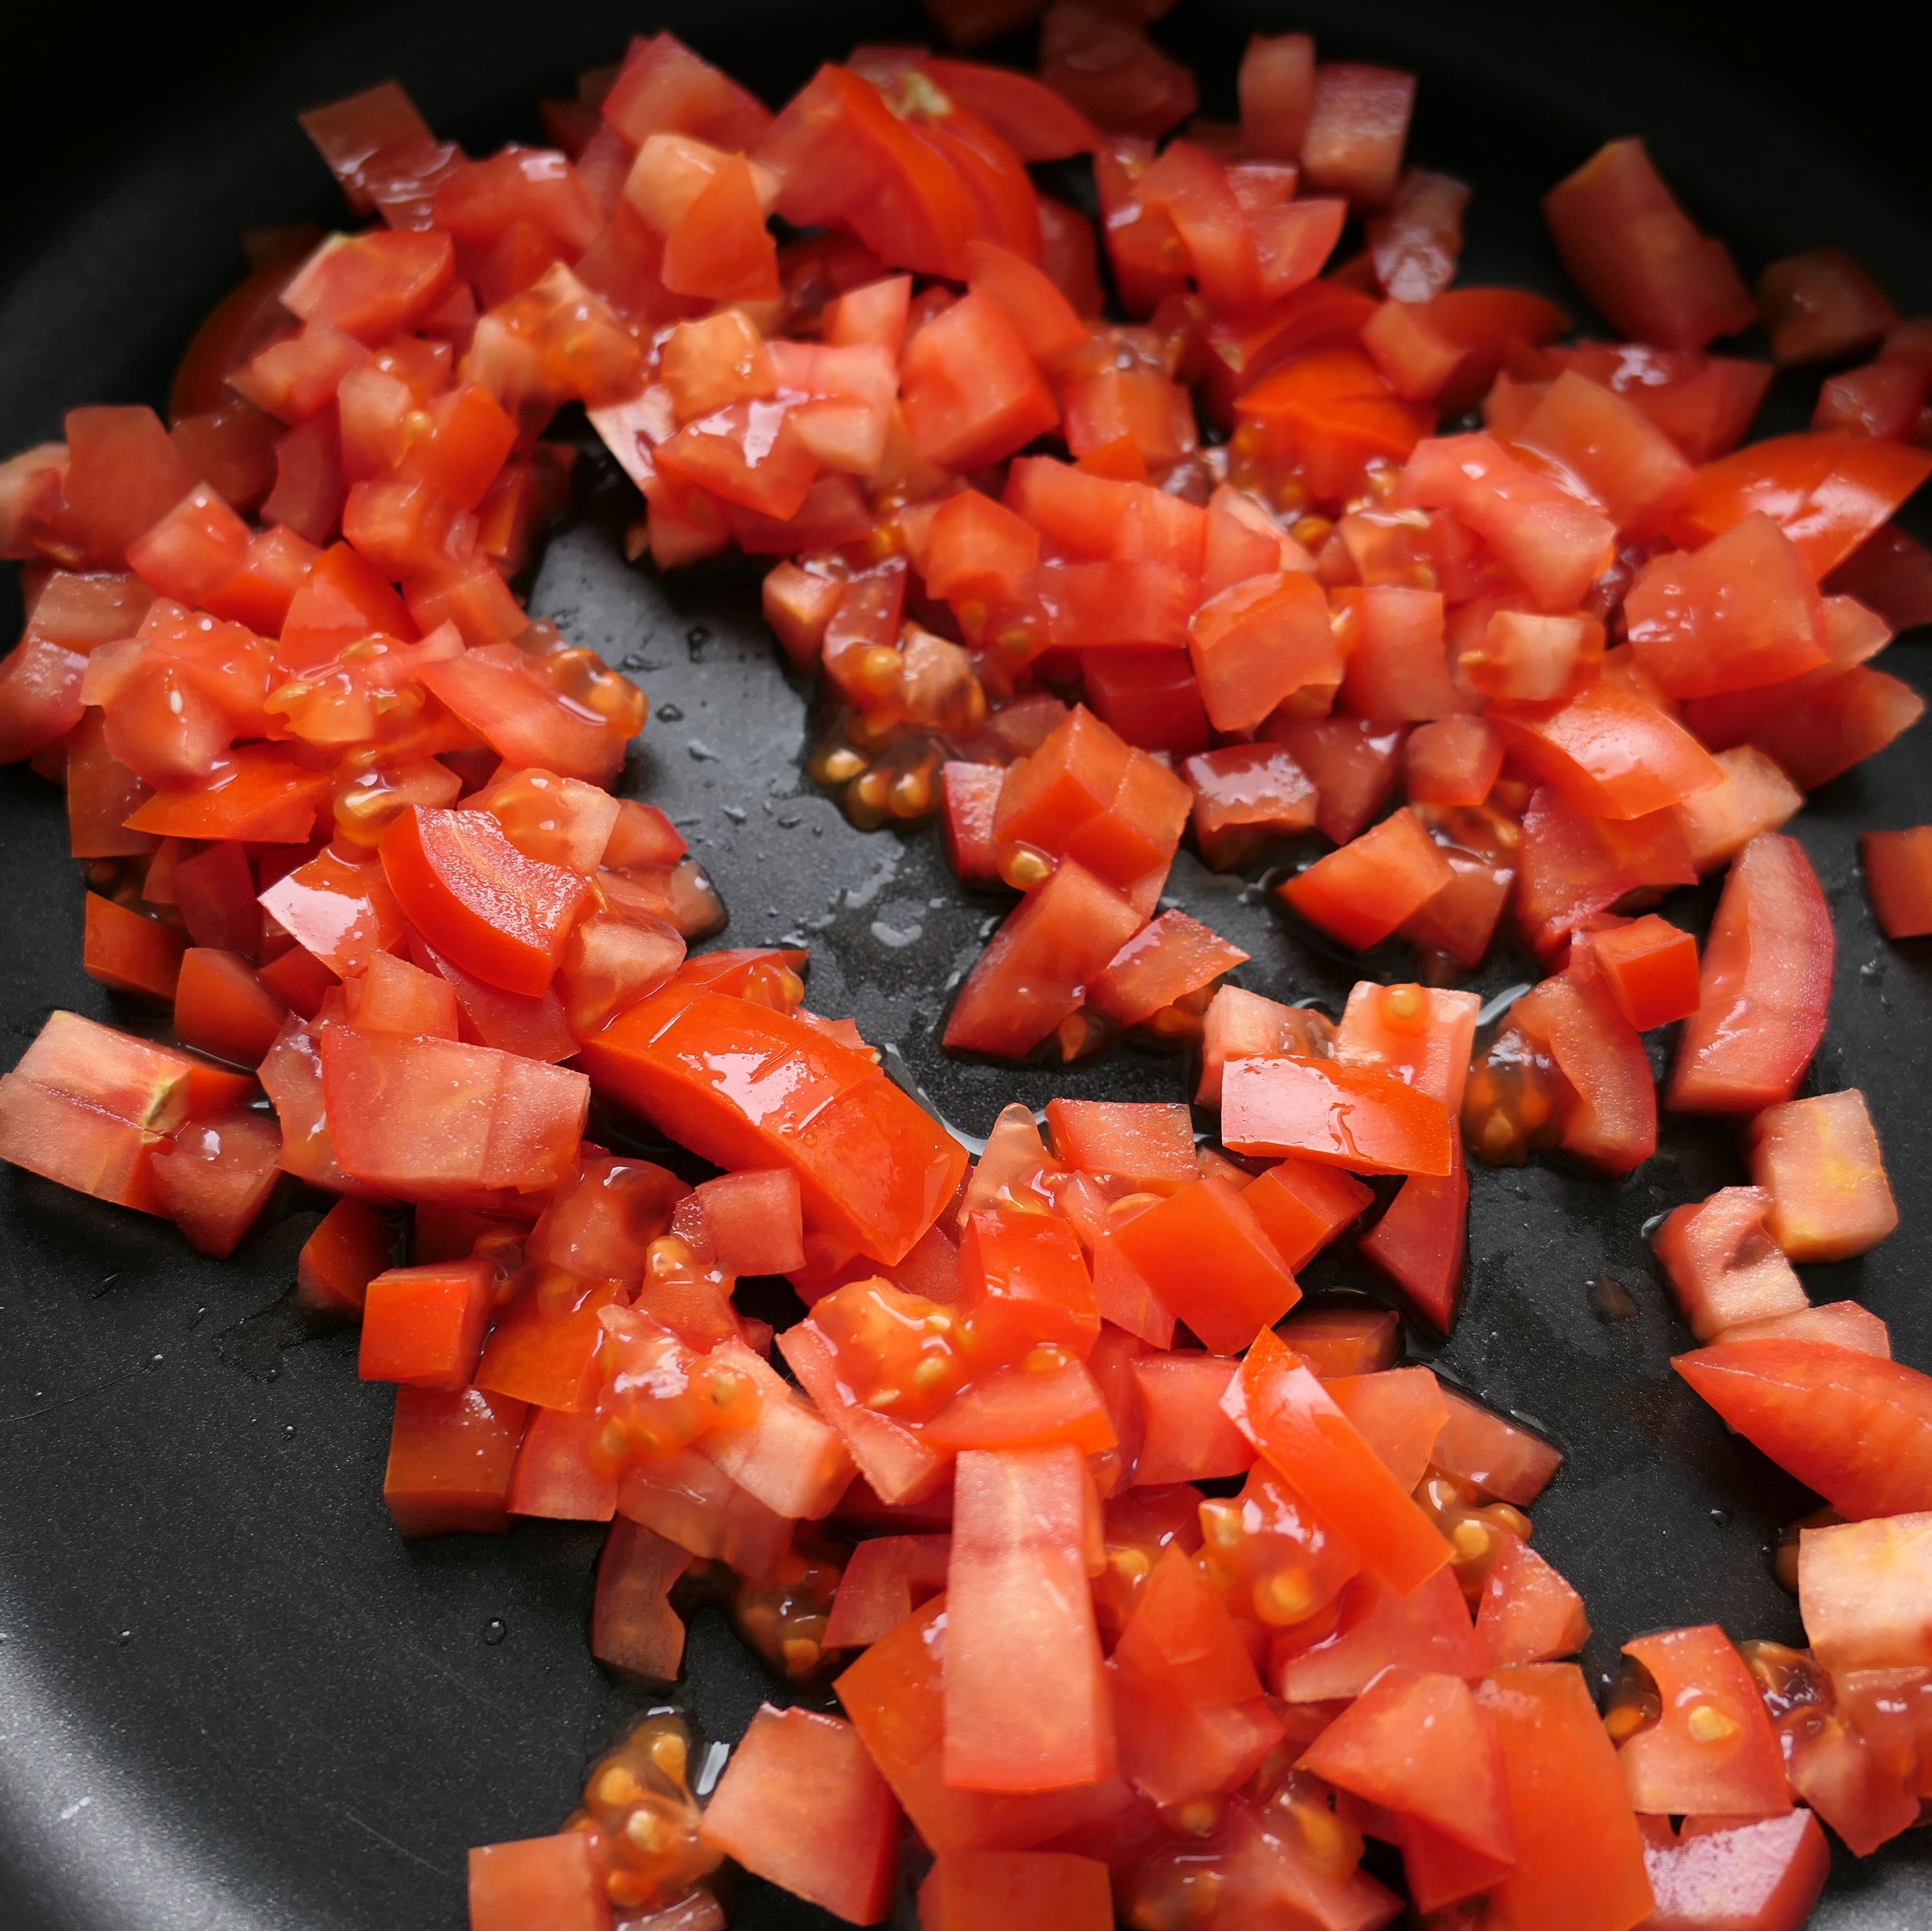 Würfle die Tomaten und brate sie bei mittlerer Hitze mit 1 EL Olivenöl in der Pfanne 10 Minuten an.